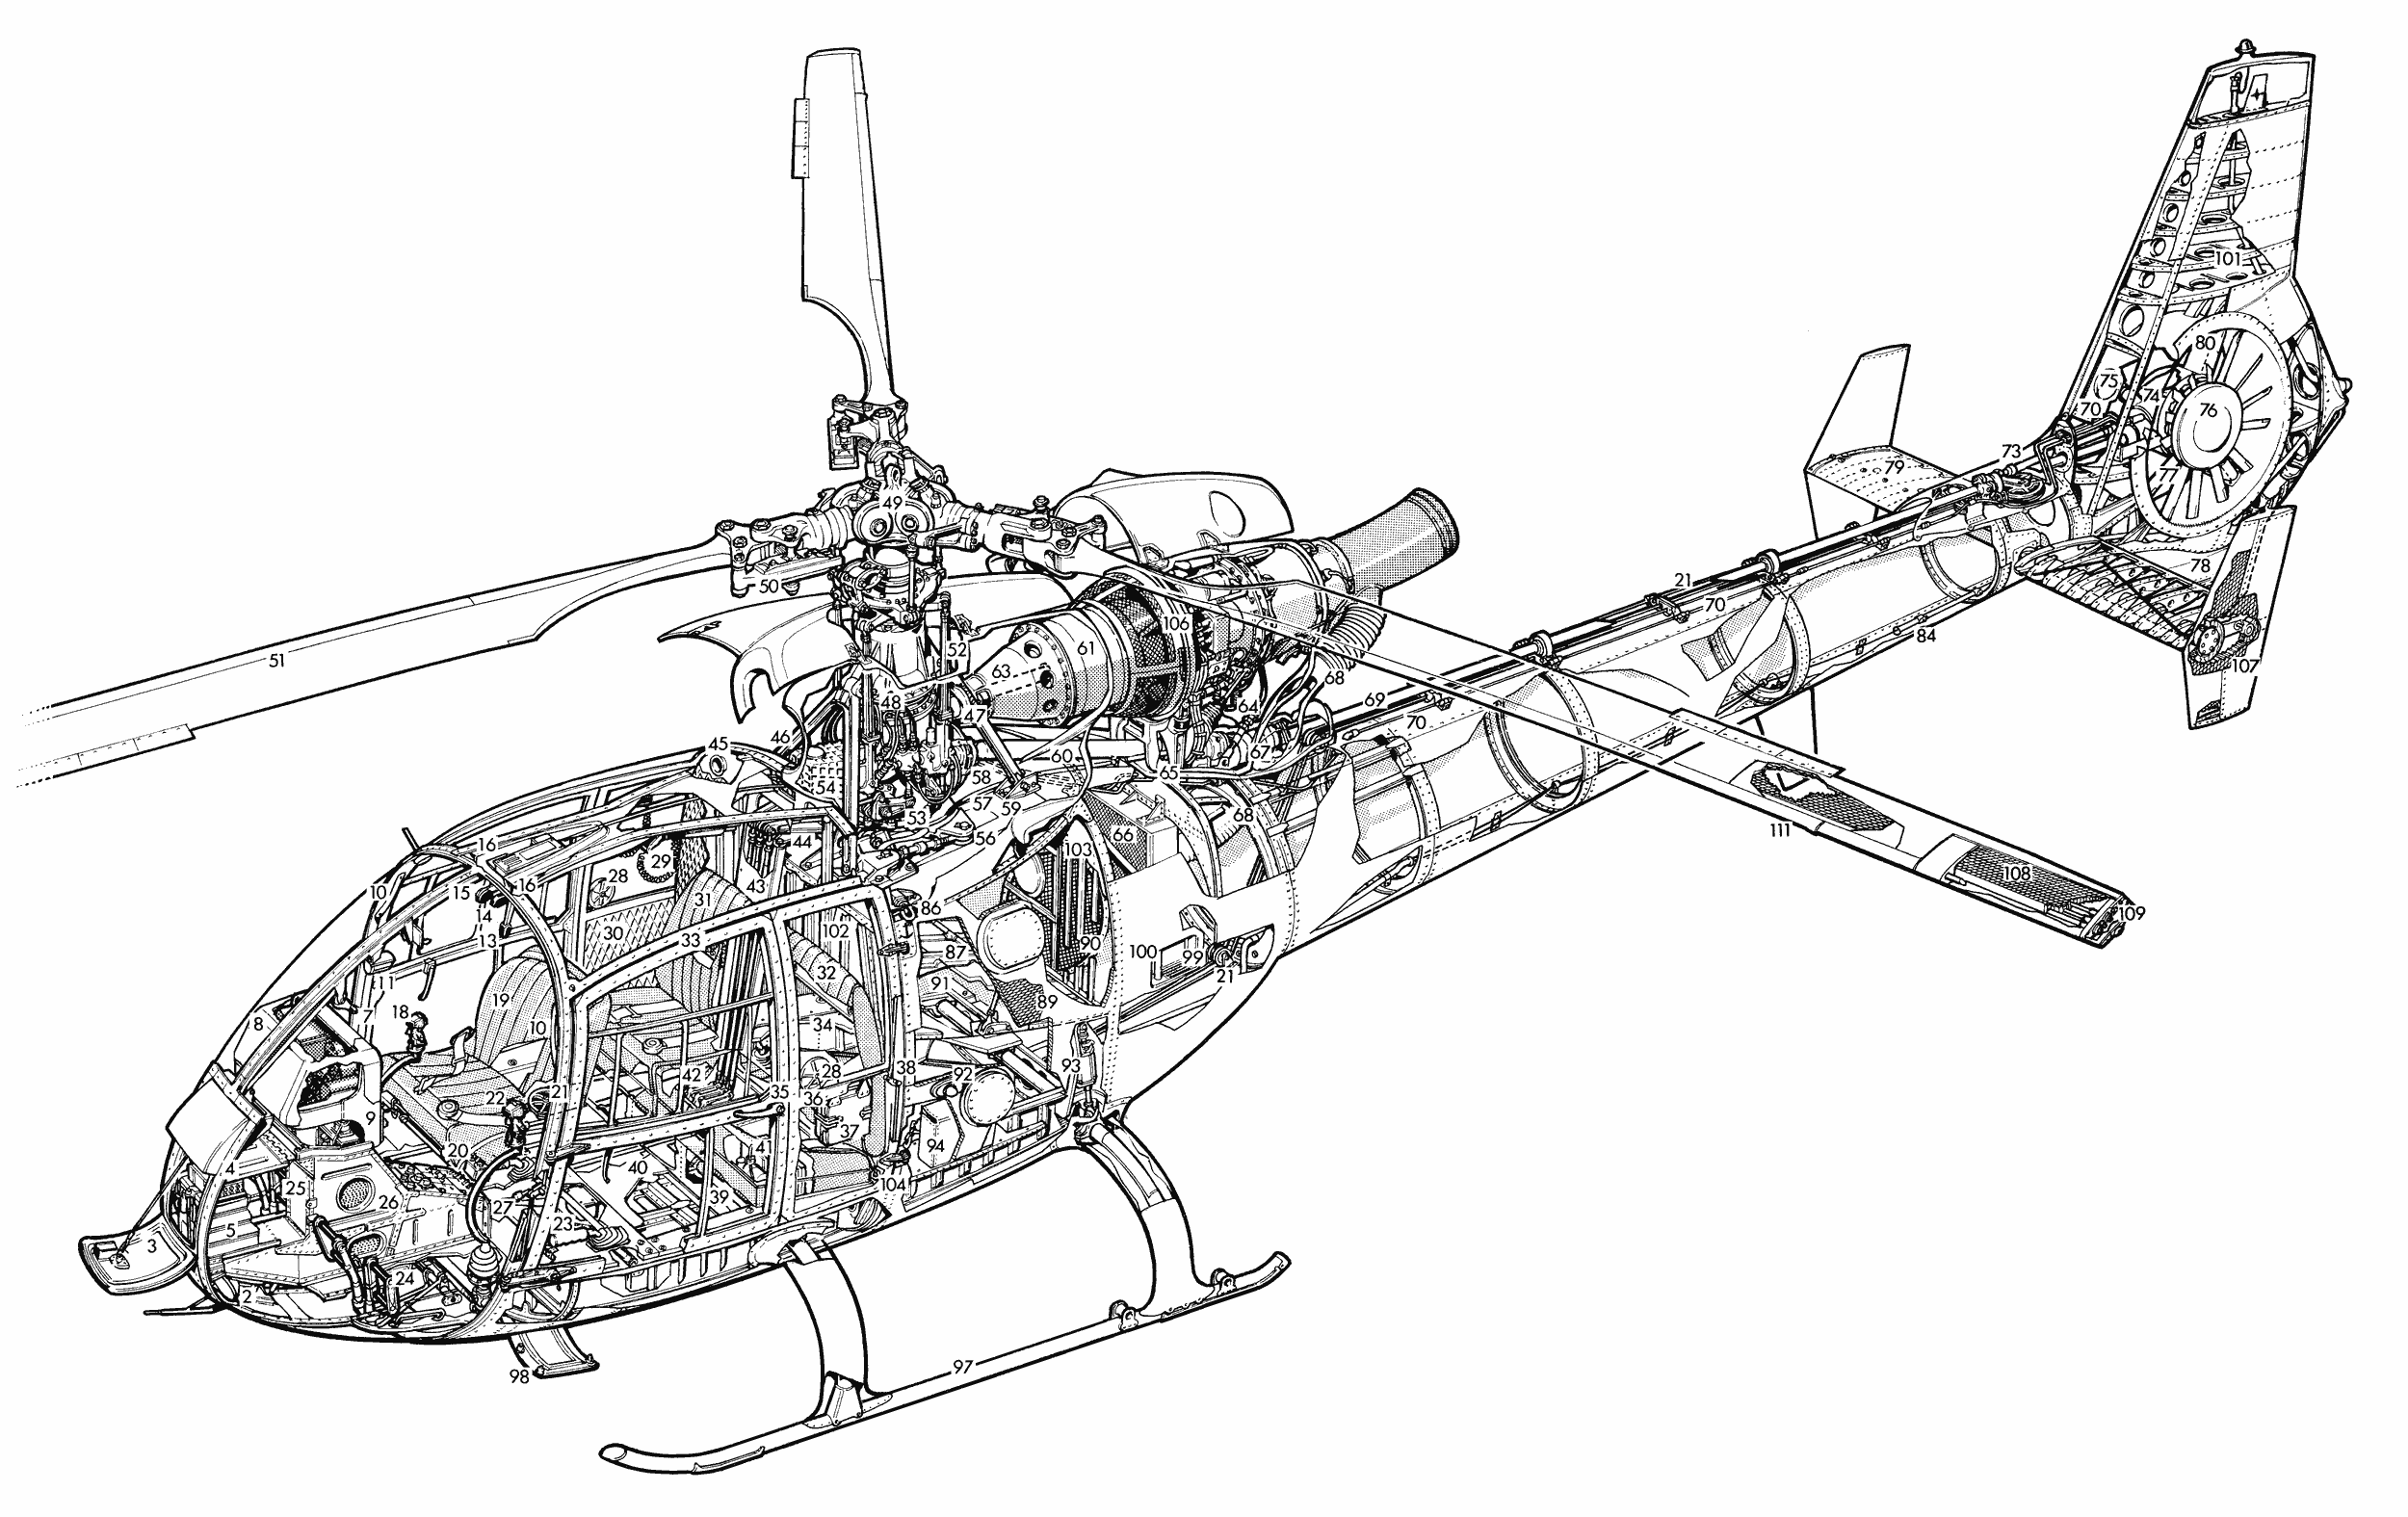 Aerospatiale Gazelle cutaway